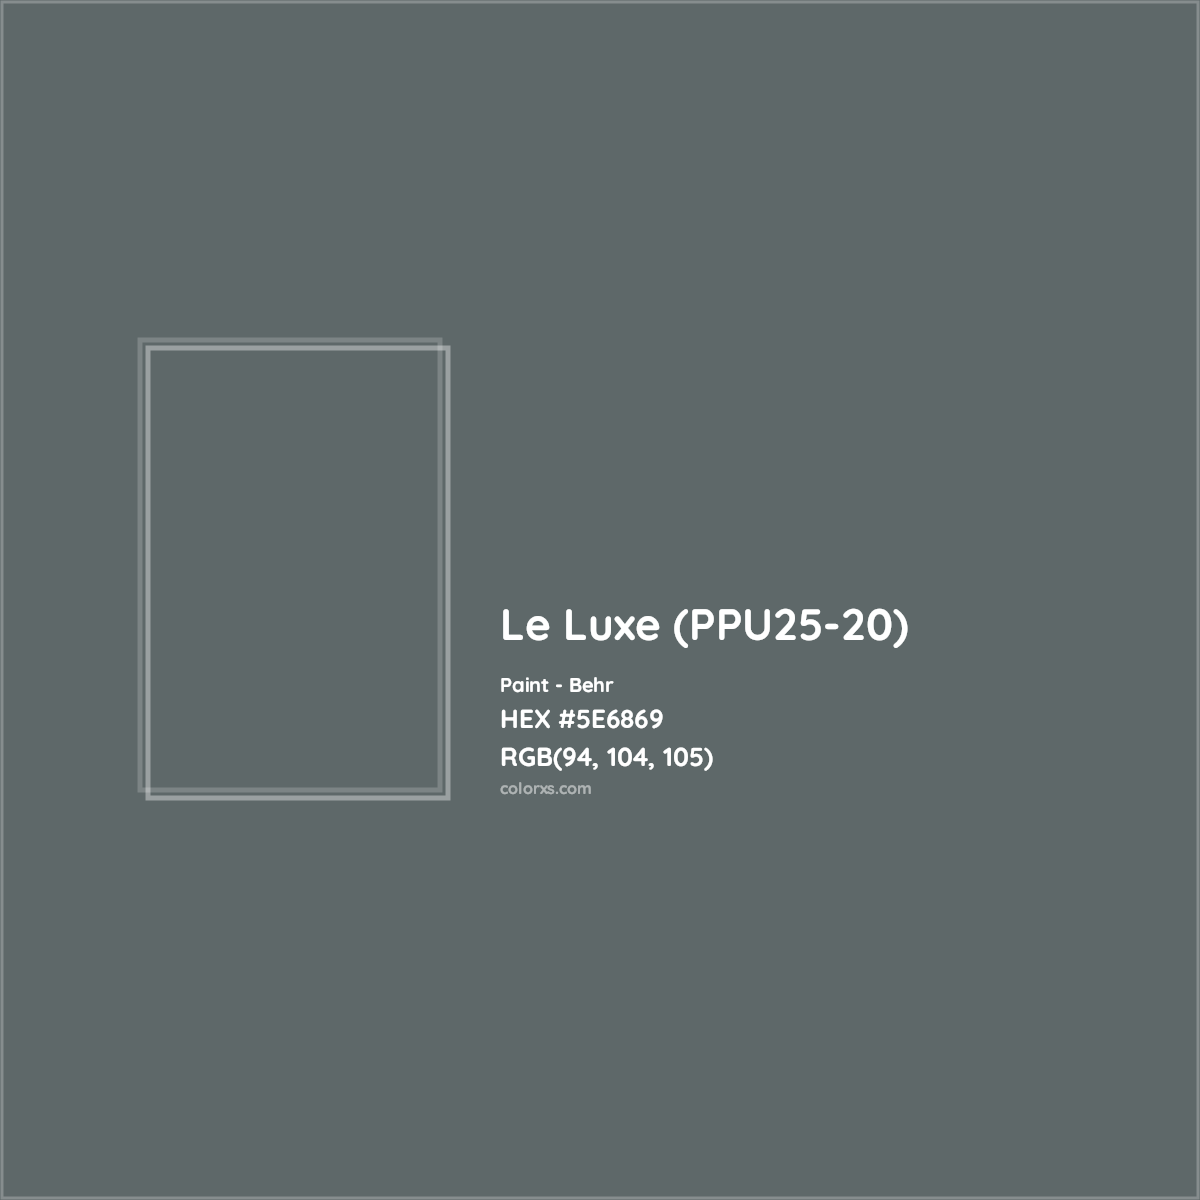 HEX #5E6869 Le Luxe (PPU25-20) Paint Behr - Color Code